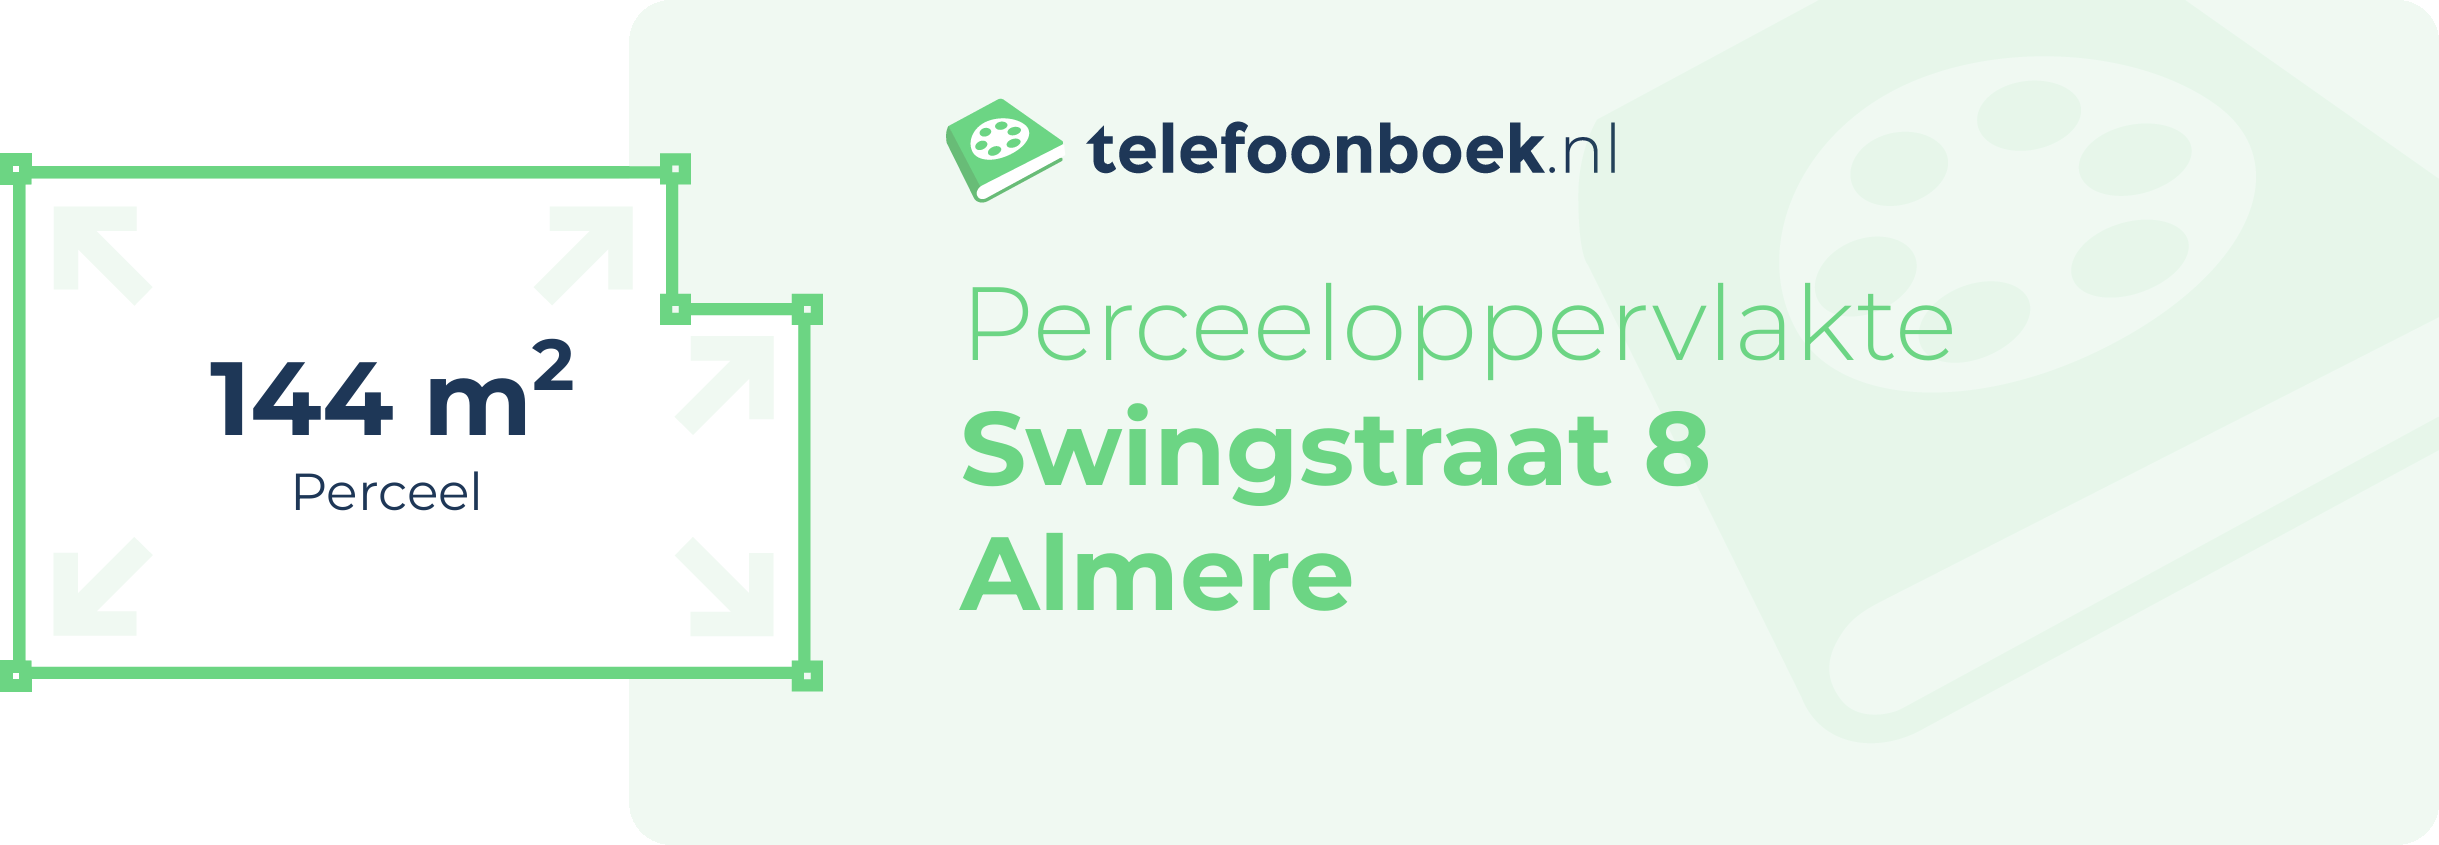 Perceeloppervlakte Swingstraat 8 Almere